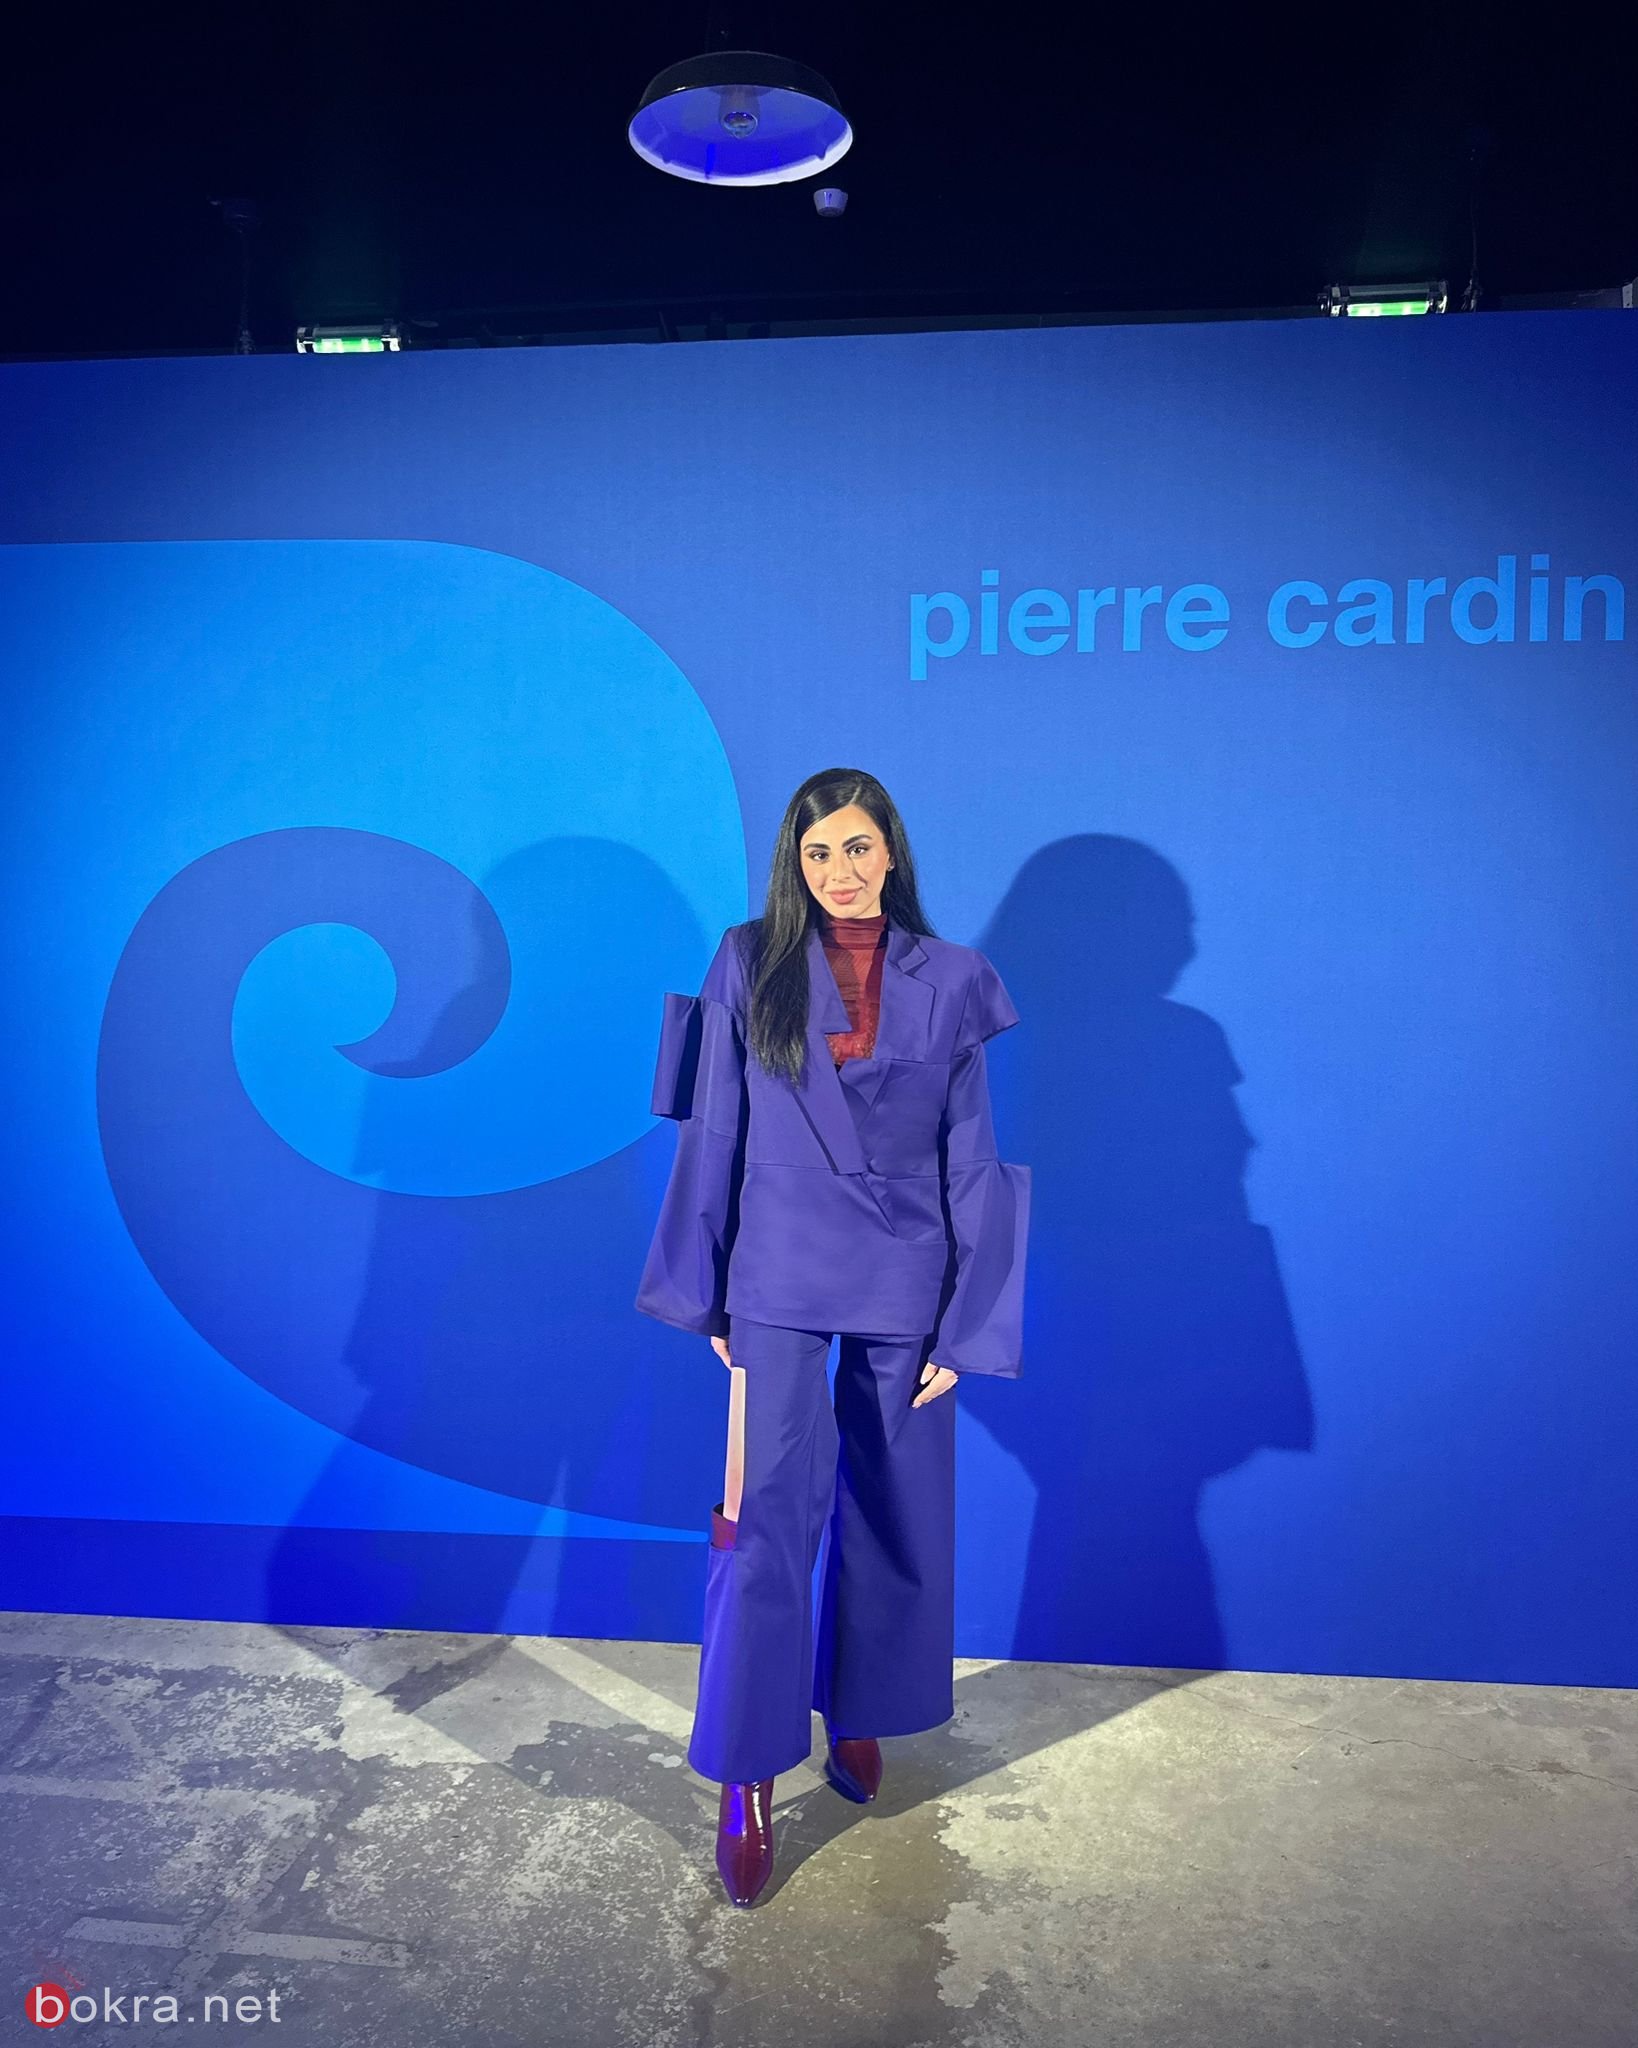 بعد فوزها بجائزة "بيير كاردان..بيرلا سيباني :" احلم بأن تكون لدي شركة تصميم خاصة بي"-1